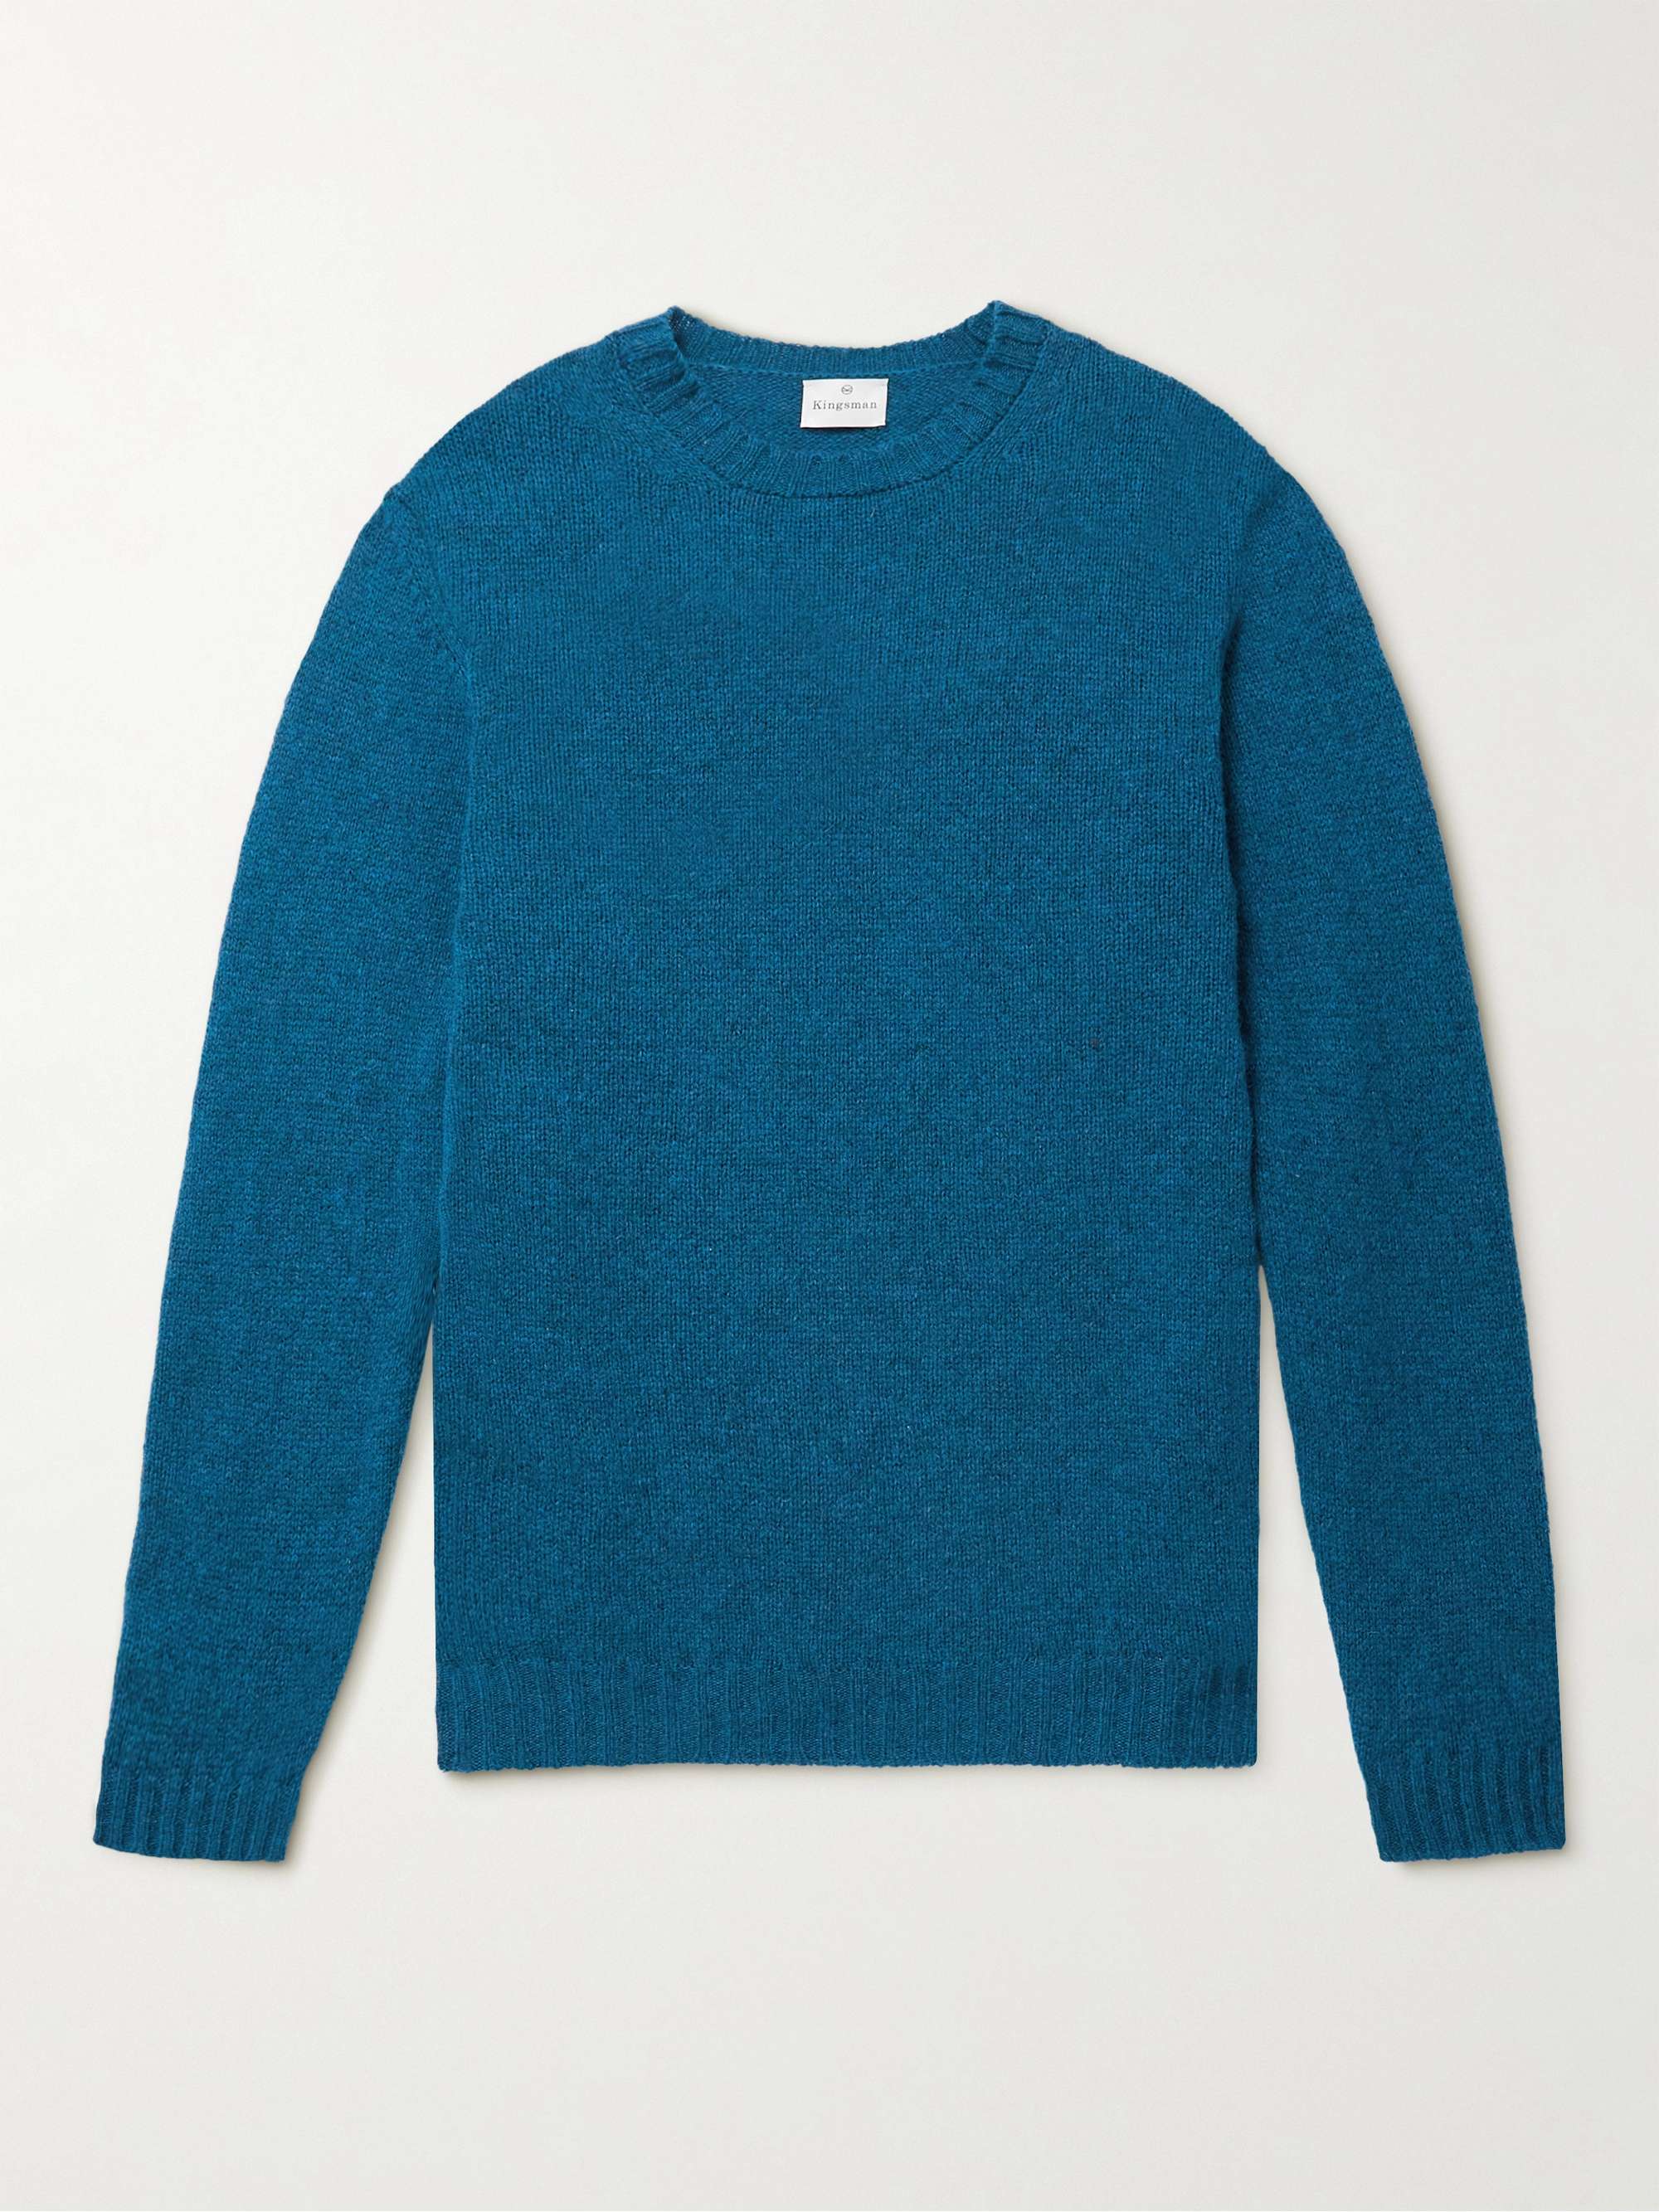 KINGSMAN Shetland Virgin Wool Sweater for Men | MR PORTER